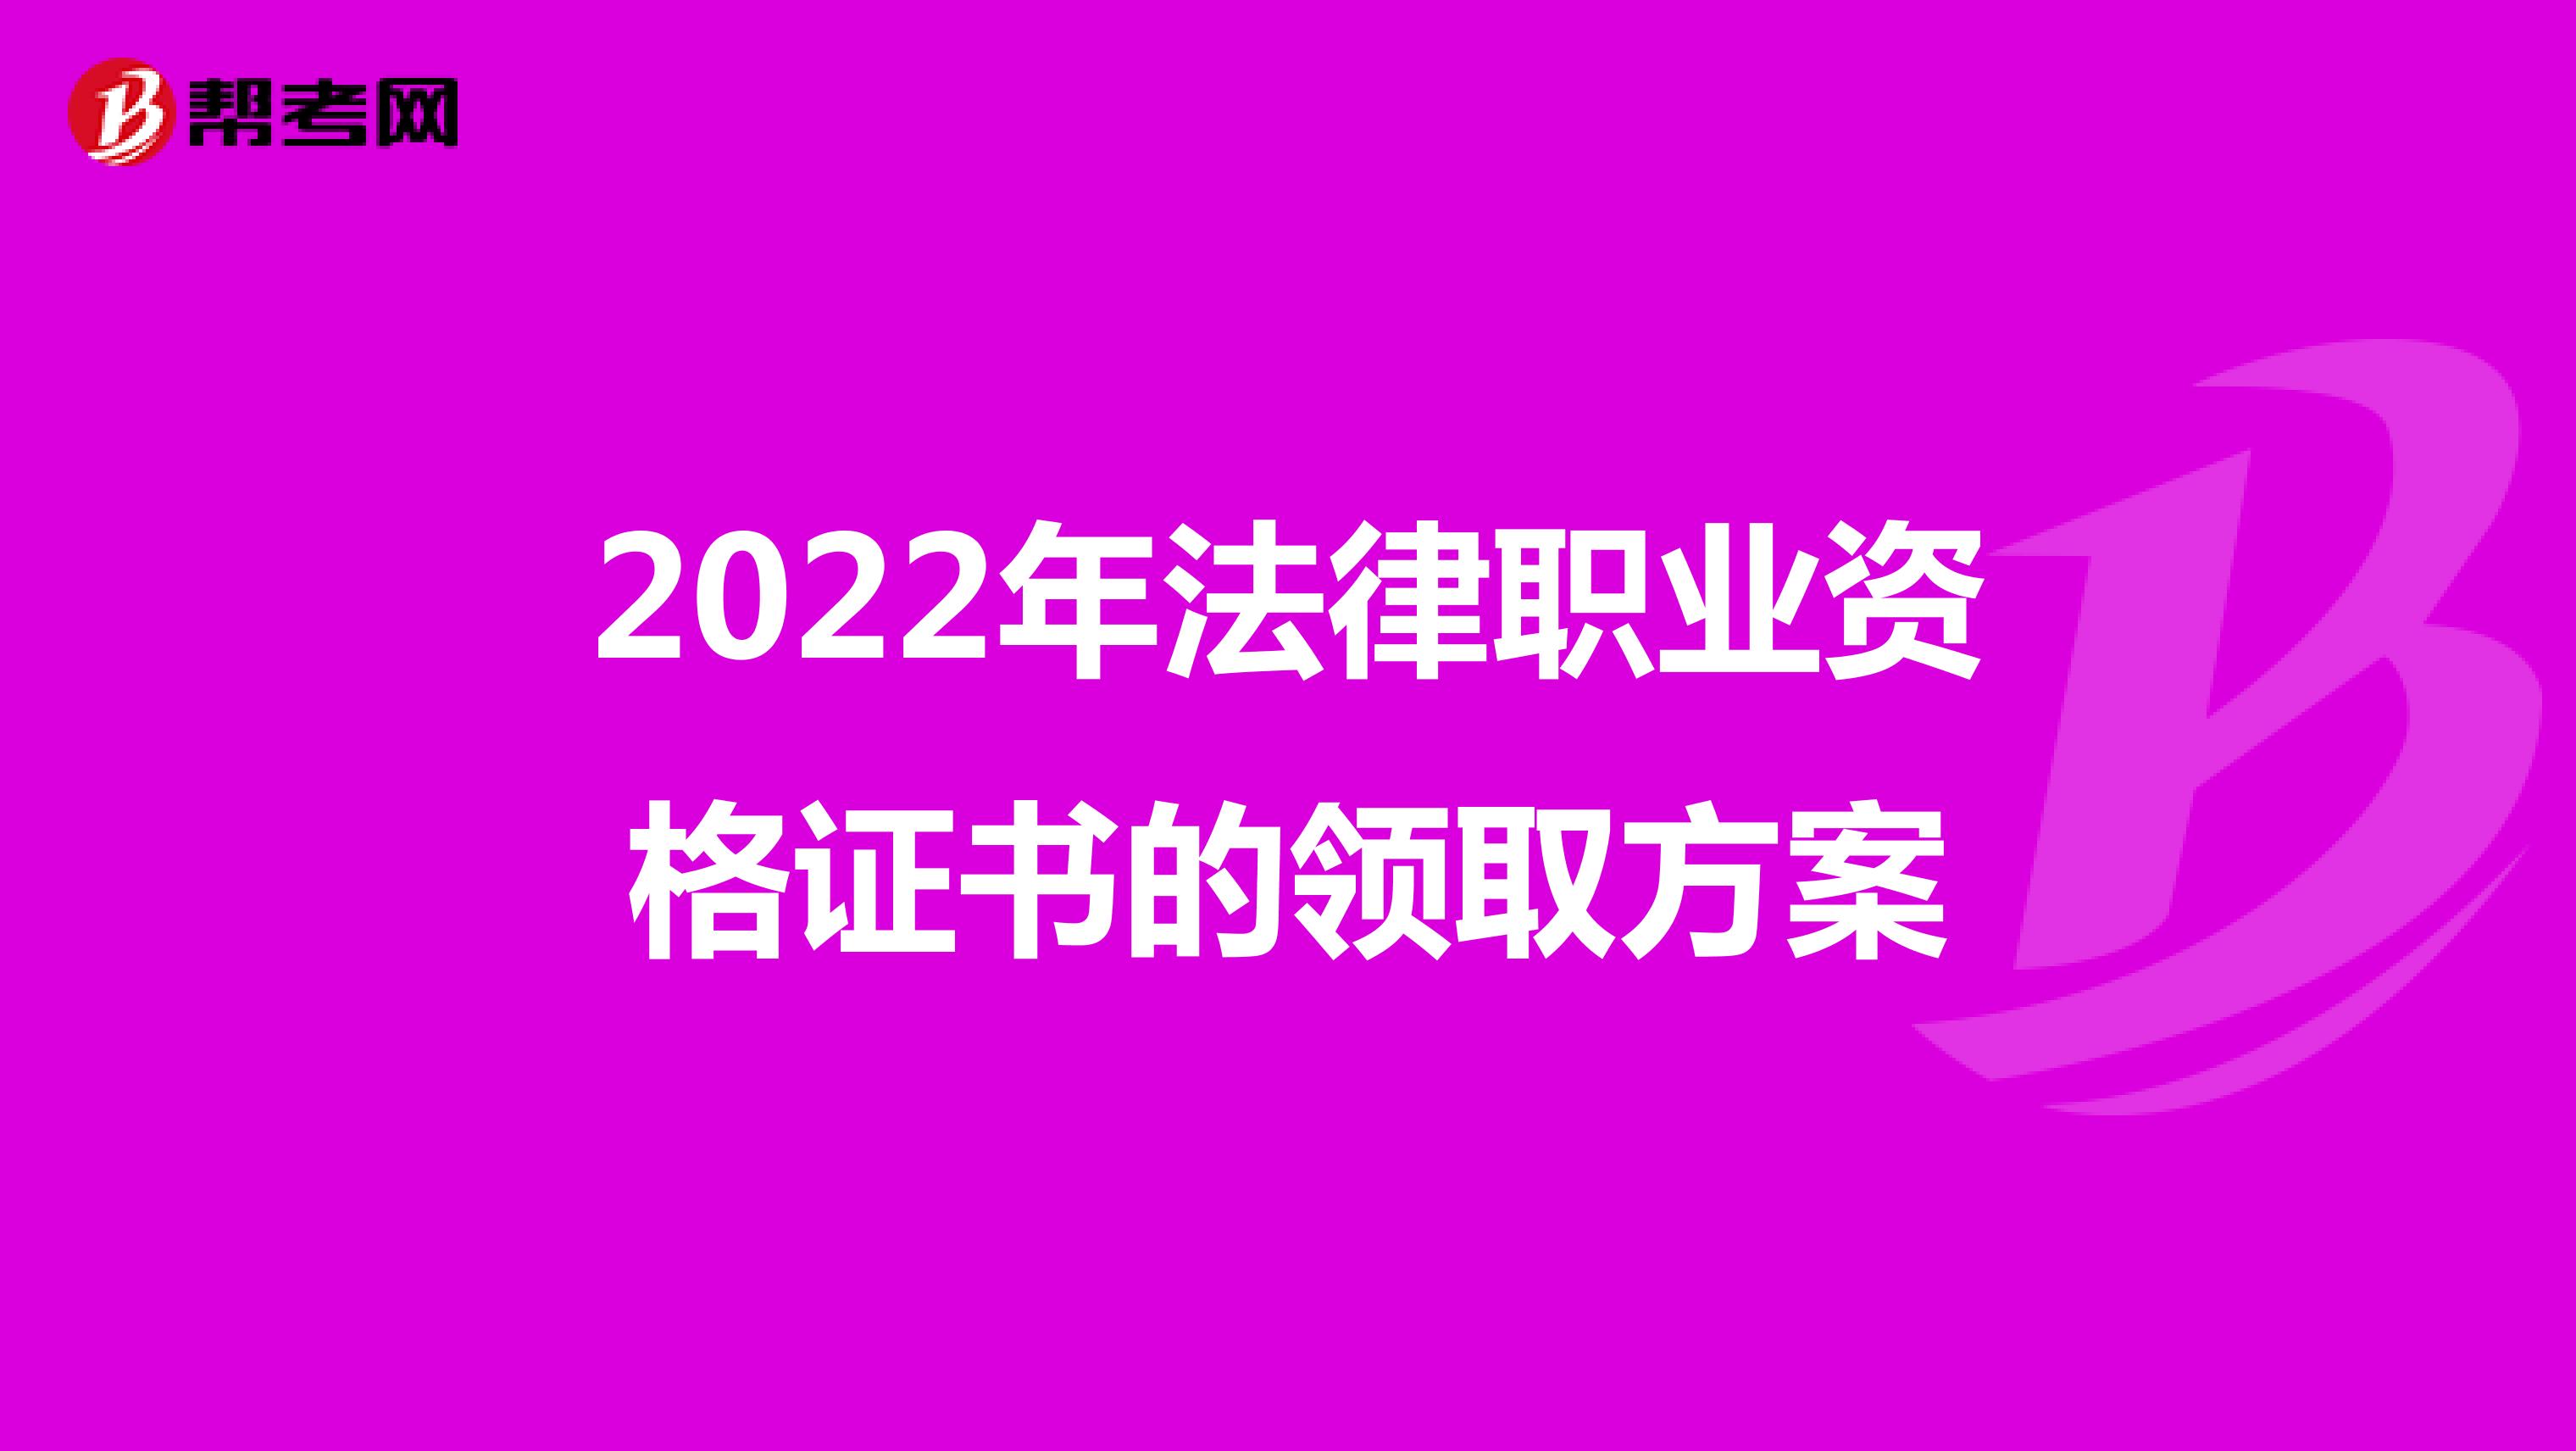 2022年法律职业资格证书的领取方案